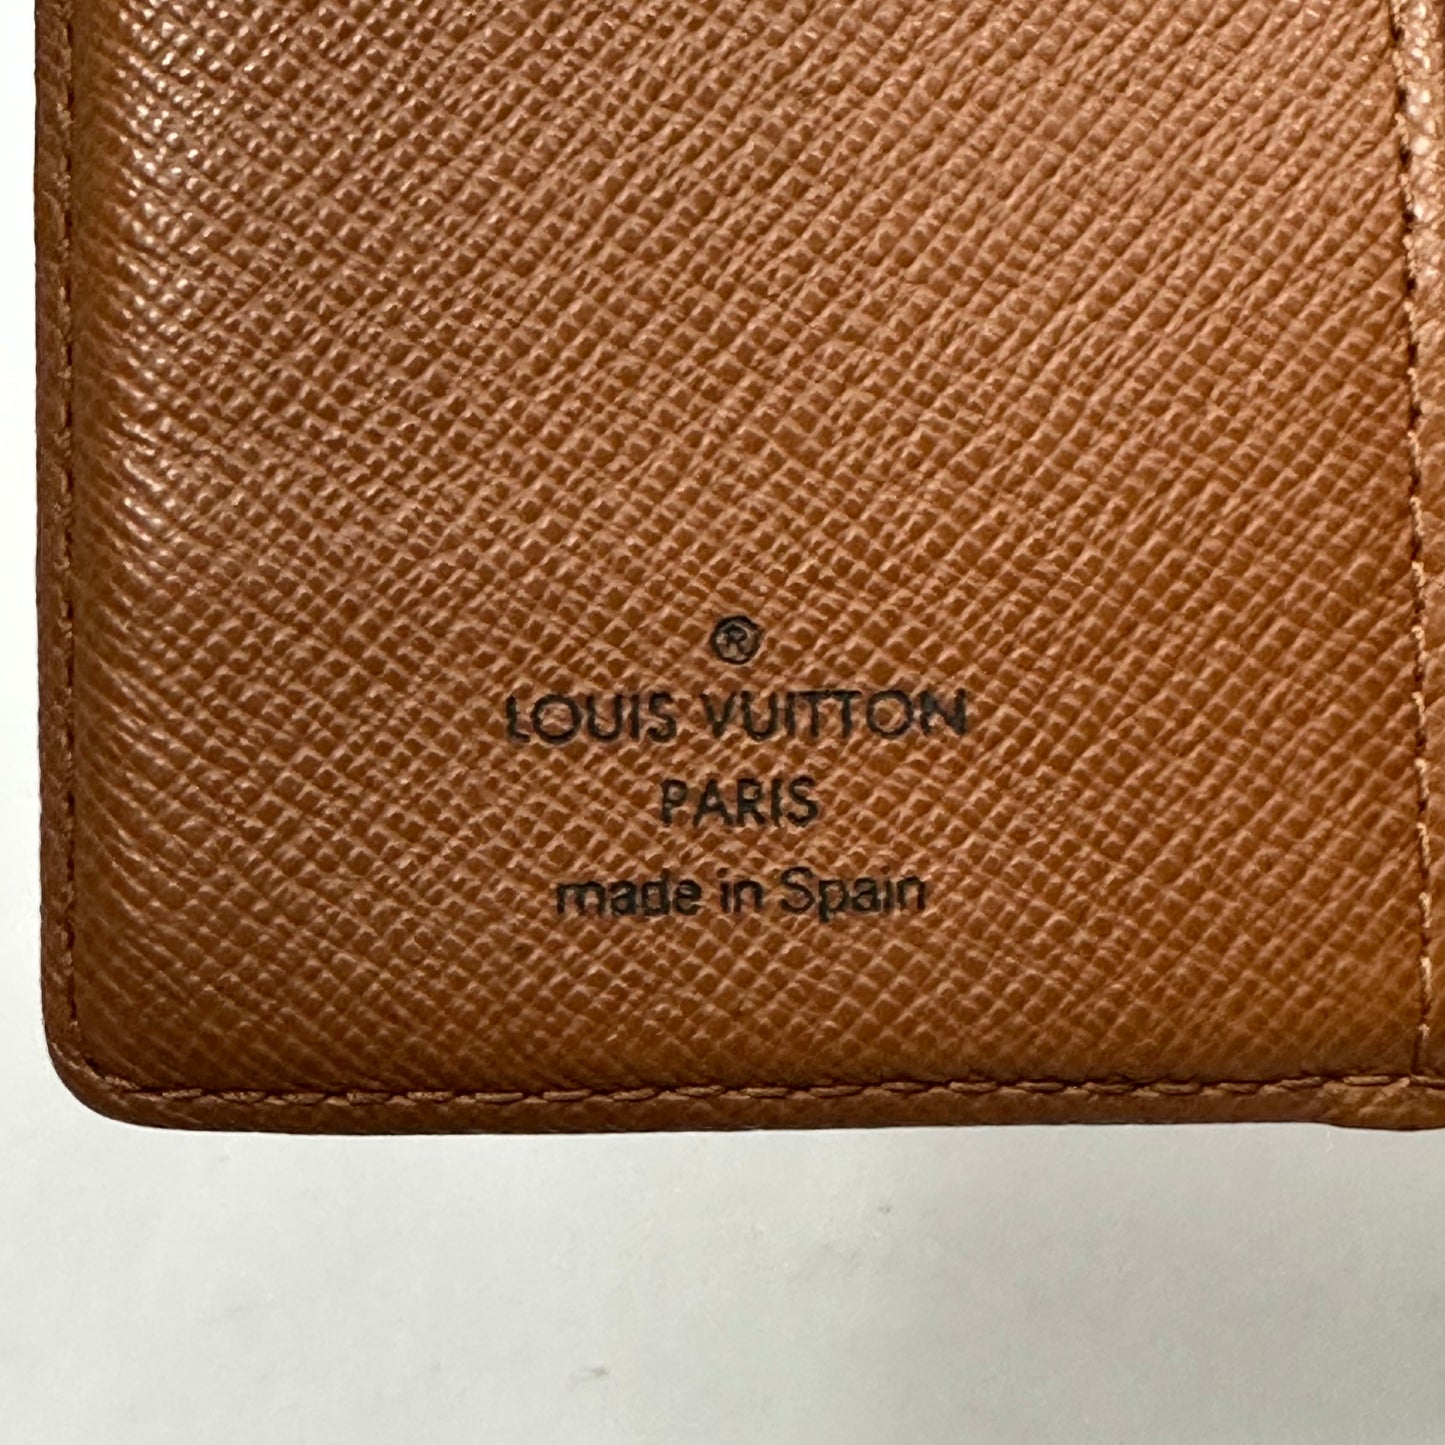 Vintage Louis Vuitton Monogram Agenda PM Day Planner